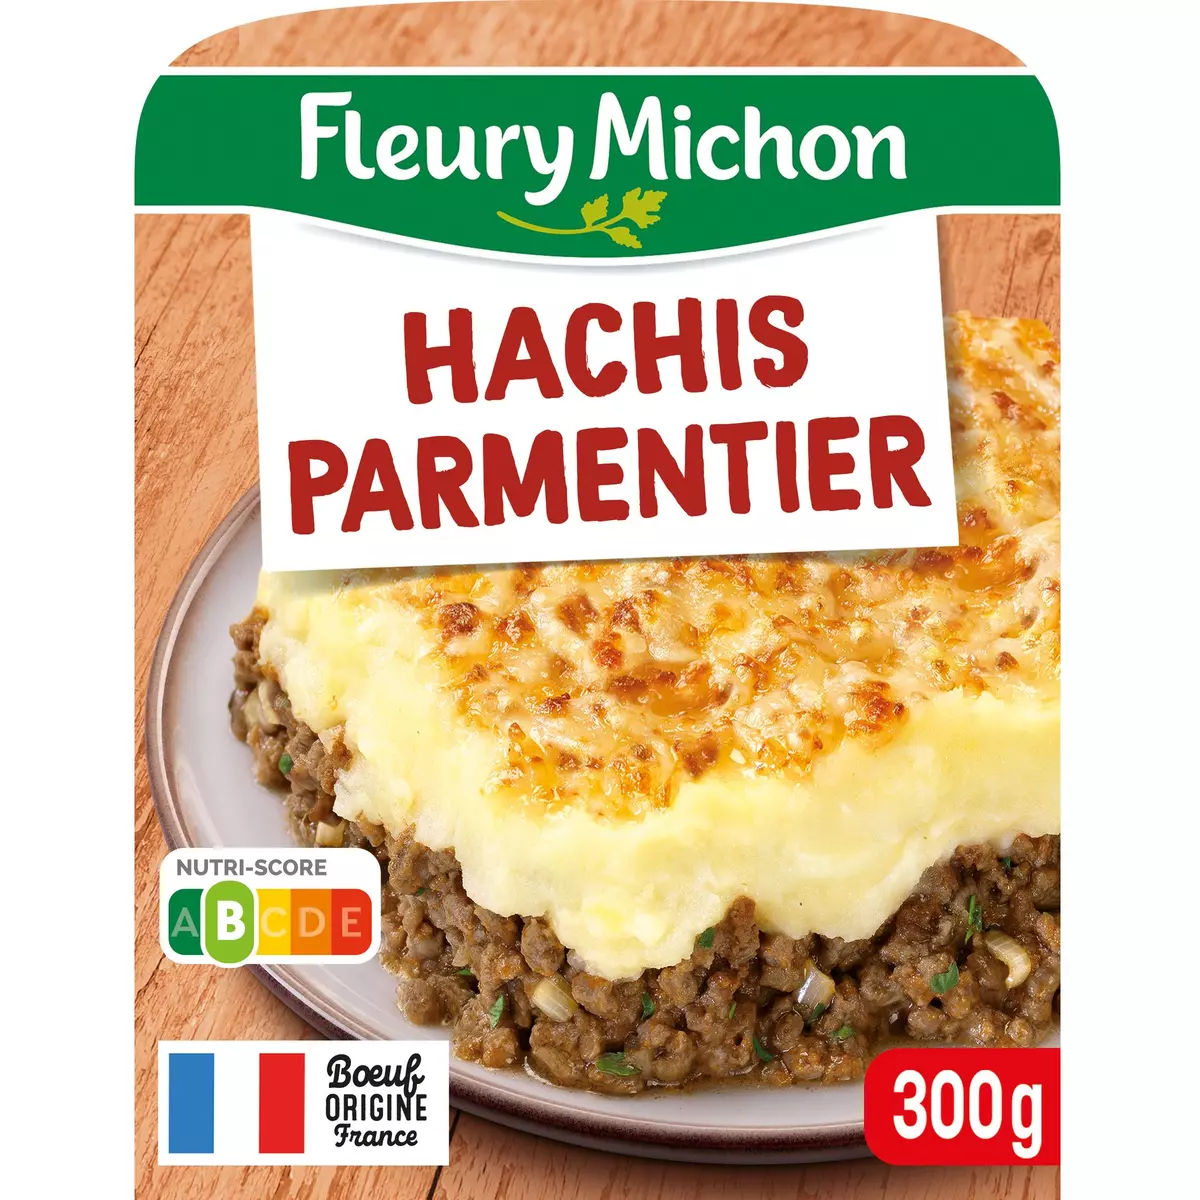 FLEURY MICHON Hachis parmentier 1 portion 300g